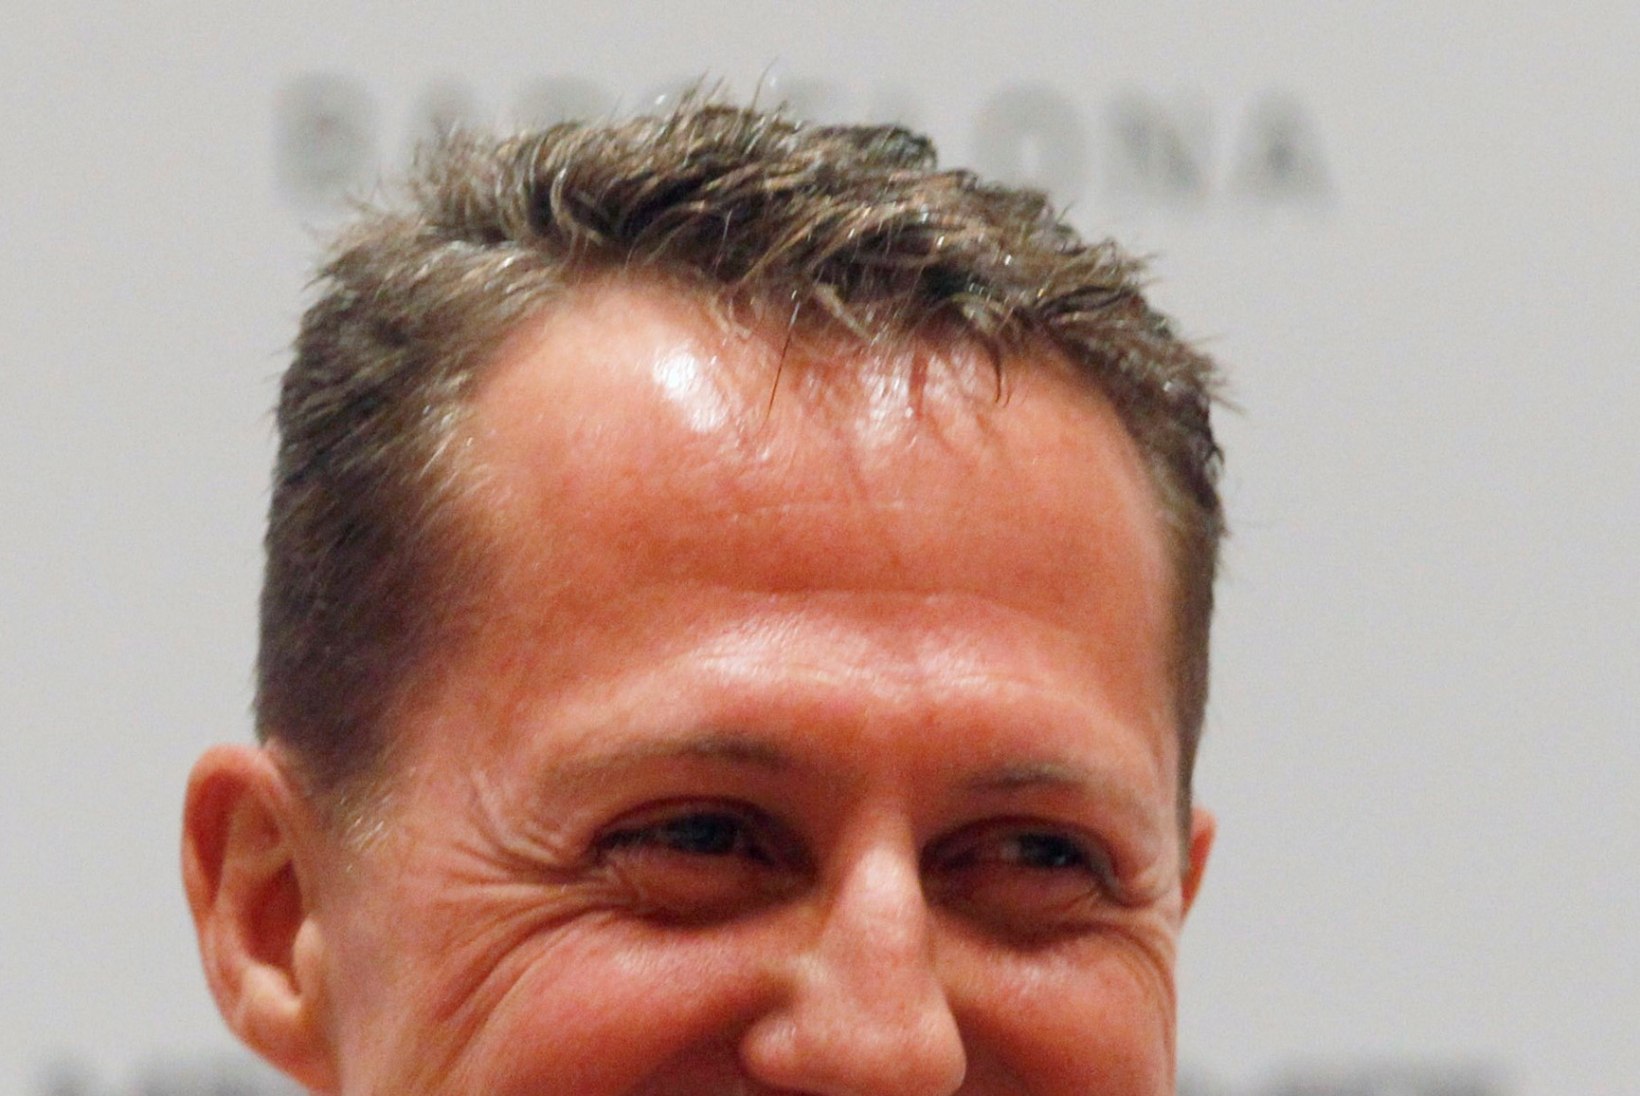 Schumacher on kaotanud üle veerandi kehakaalust, ent pole halvatud